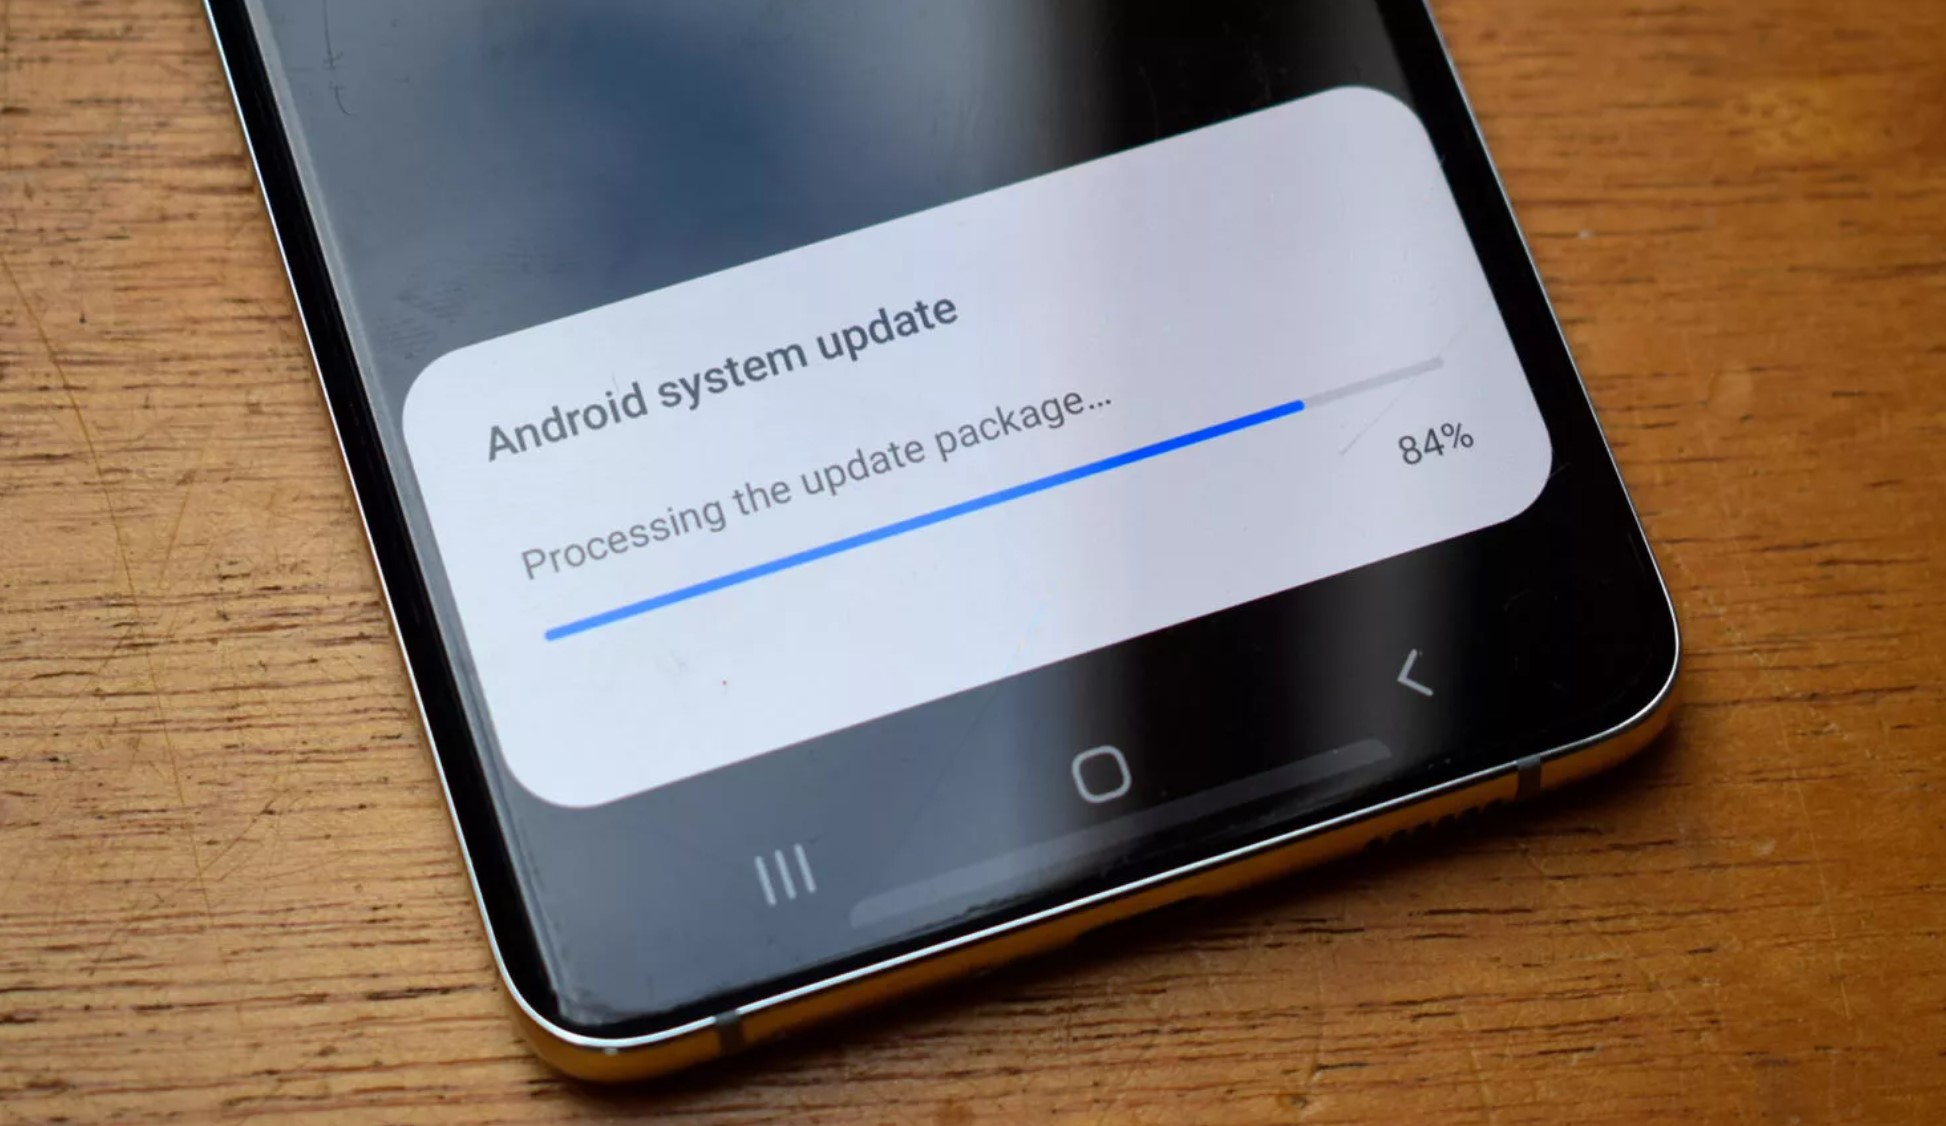 Cam kết 7 năm cập nhật hệ điều hành, Google đang thúc đẩy cả thị trường Android dập tắt lợi thế của Apple - Ảnh 6.